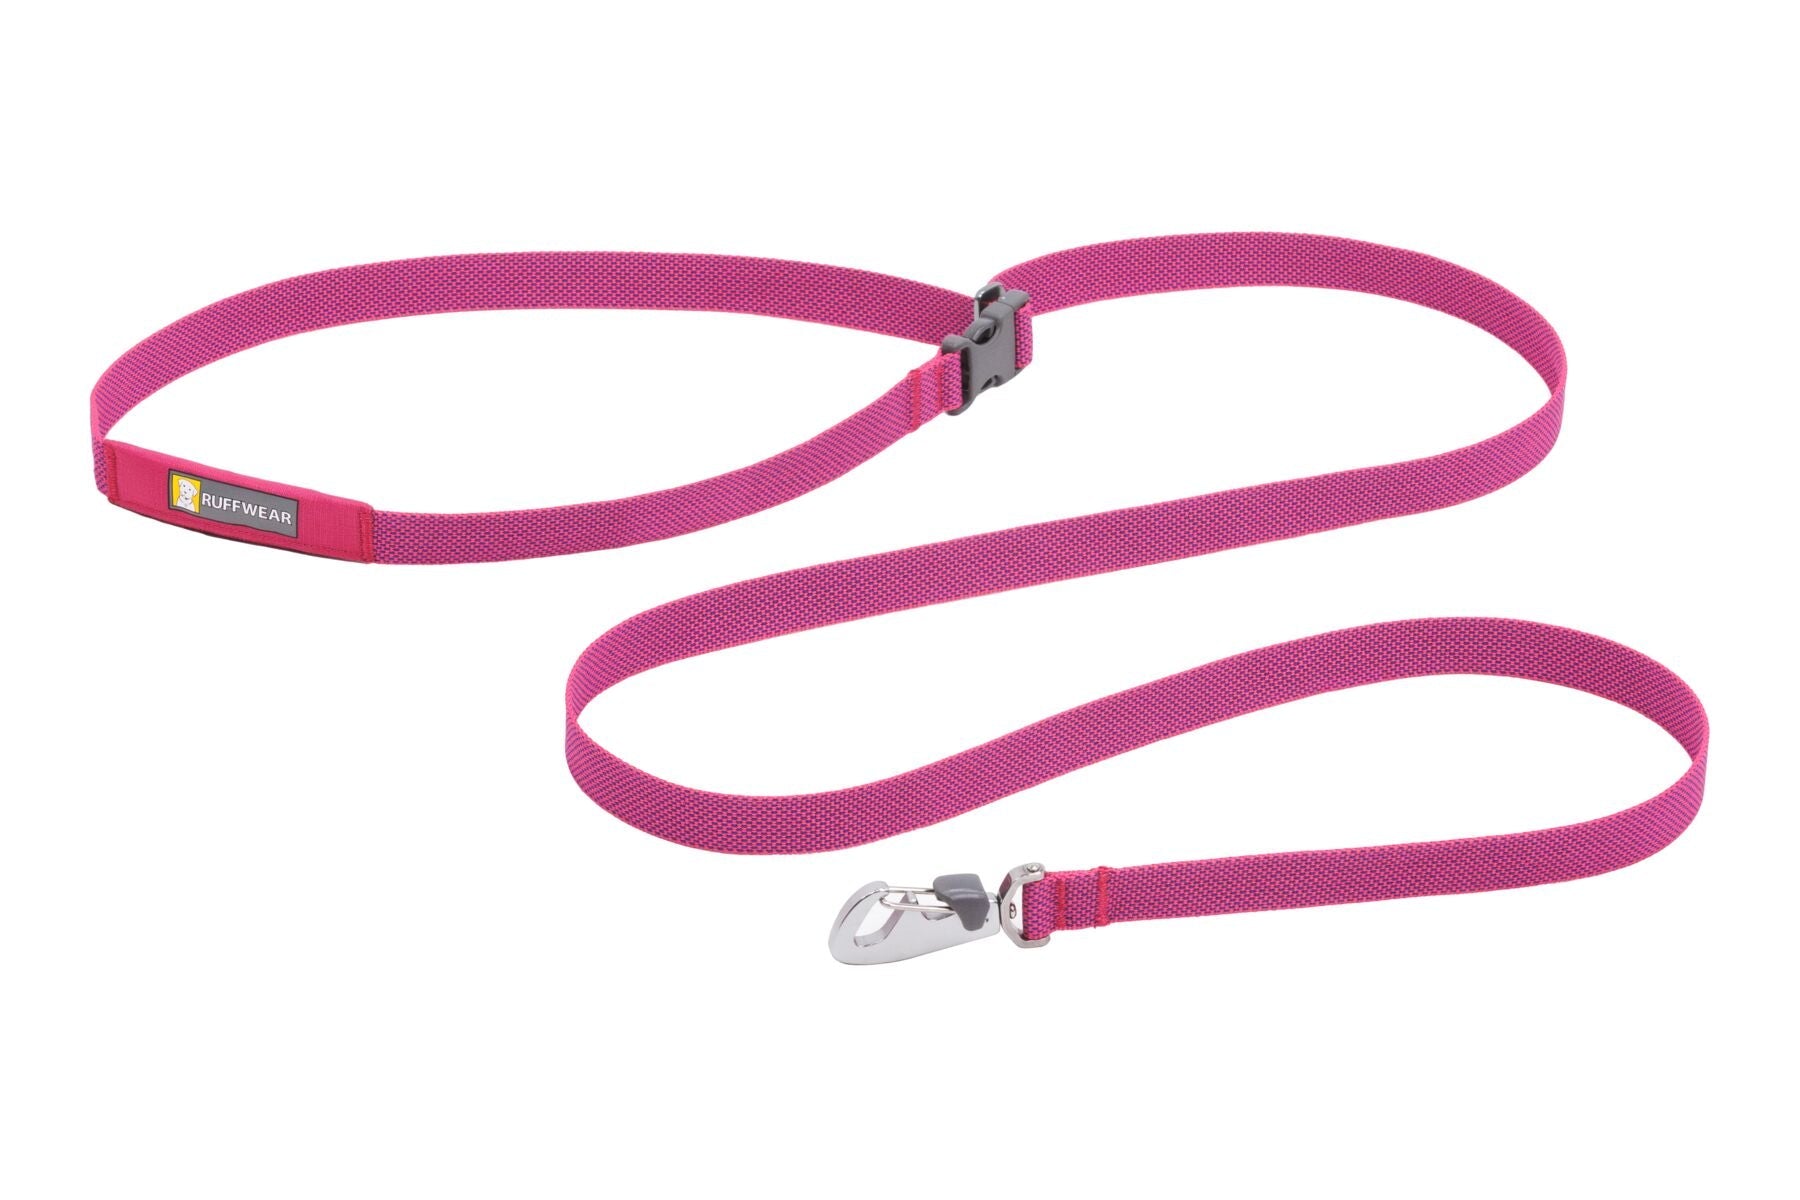 Flagline® Correa Multi-usos en Rosa Alpino (Alpenglow Pink) de Ruffwear